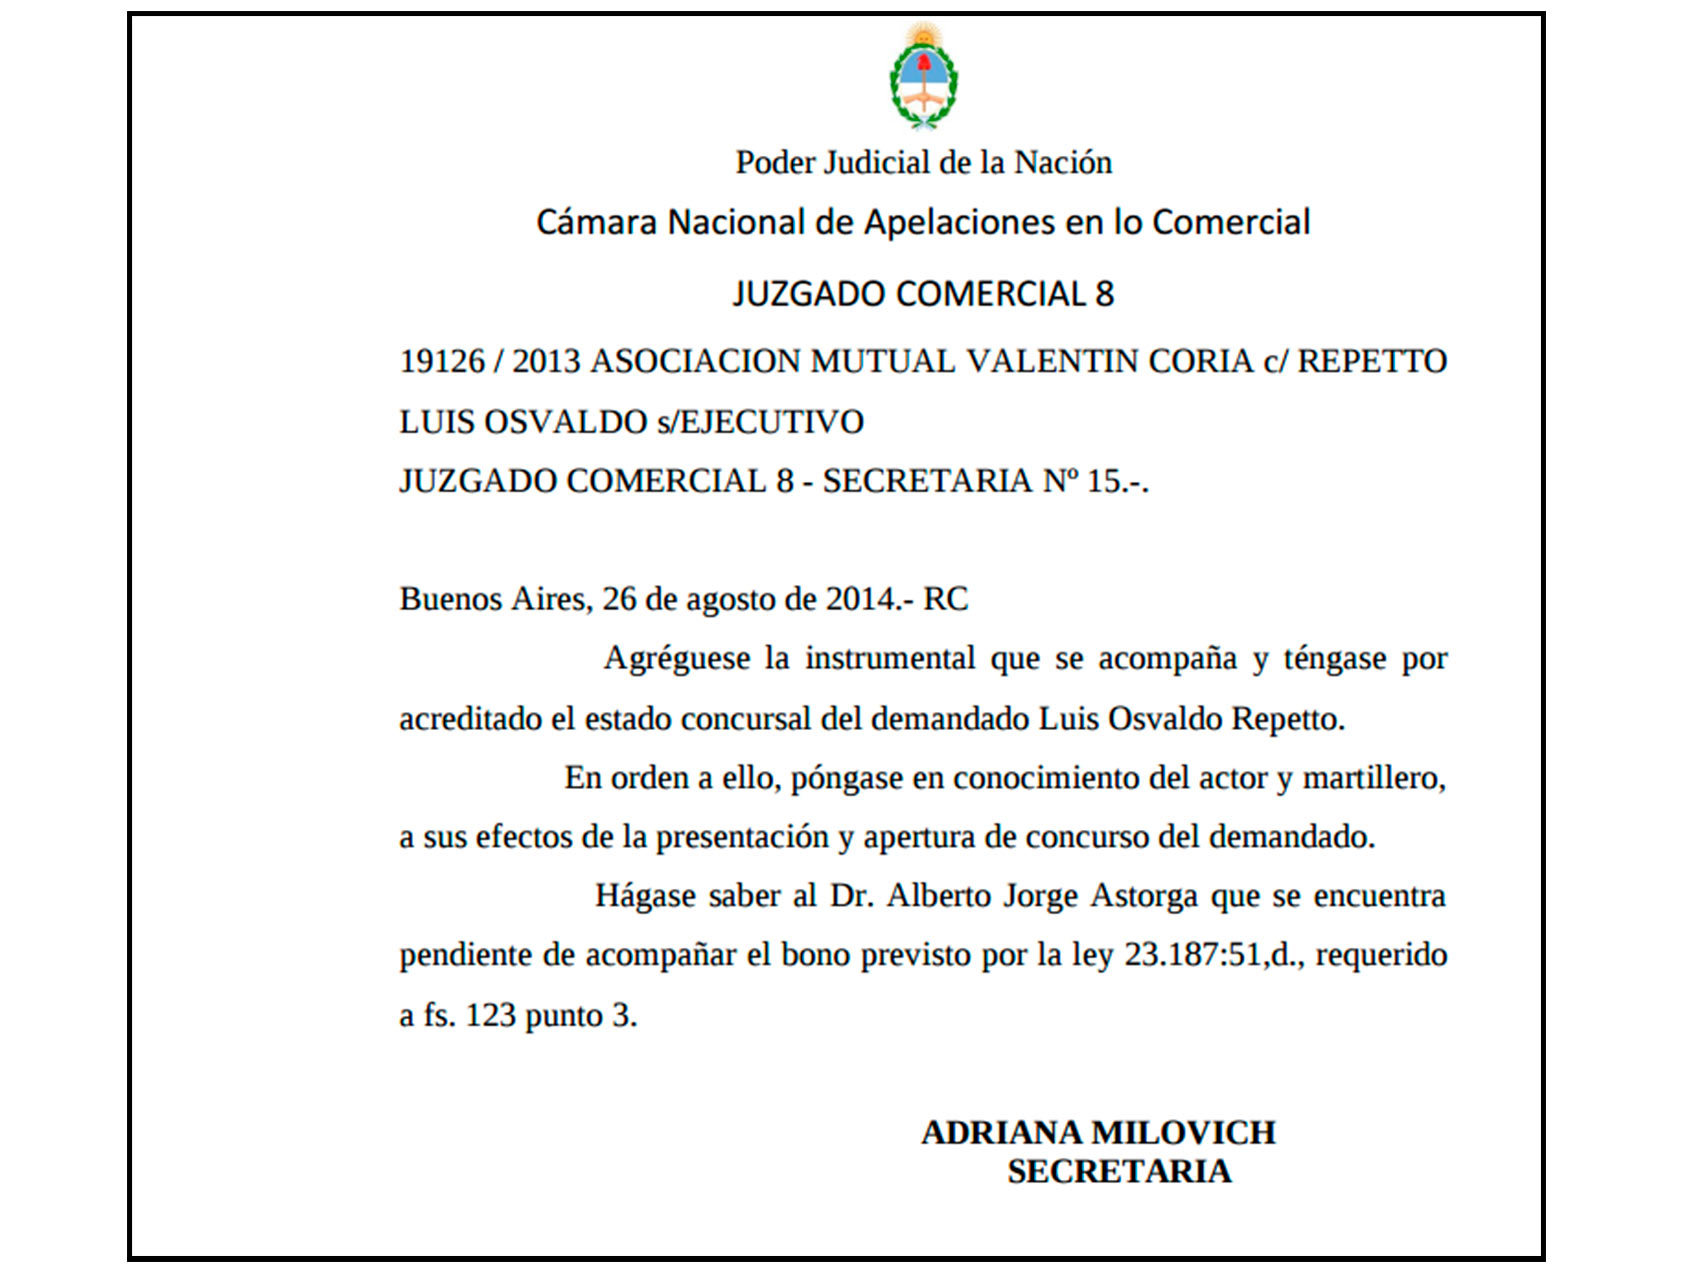 Documento que acredita la entrada en concurso del productor argentino en 2014.